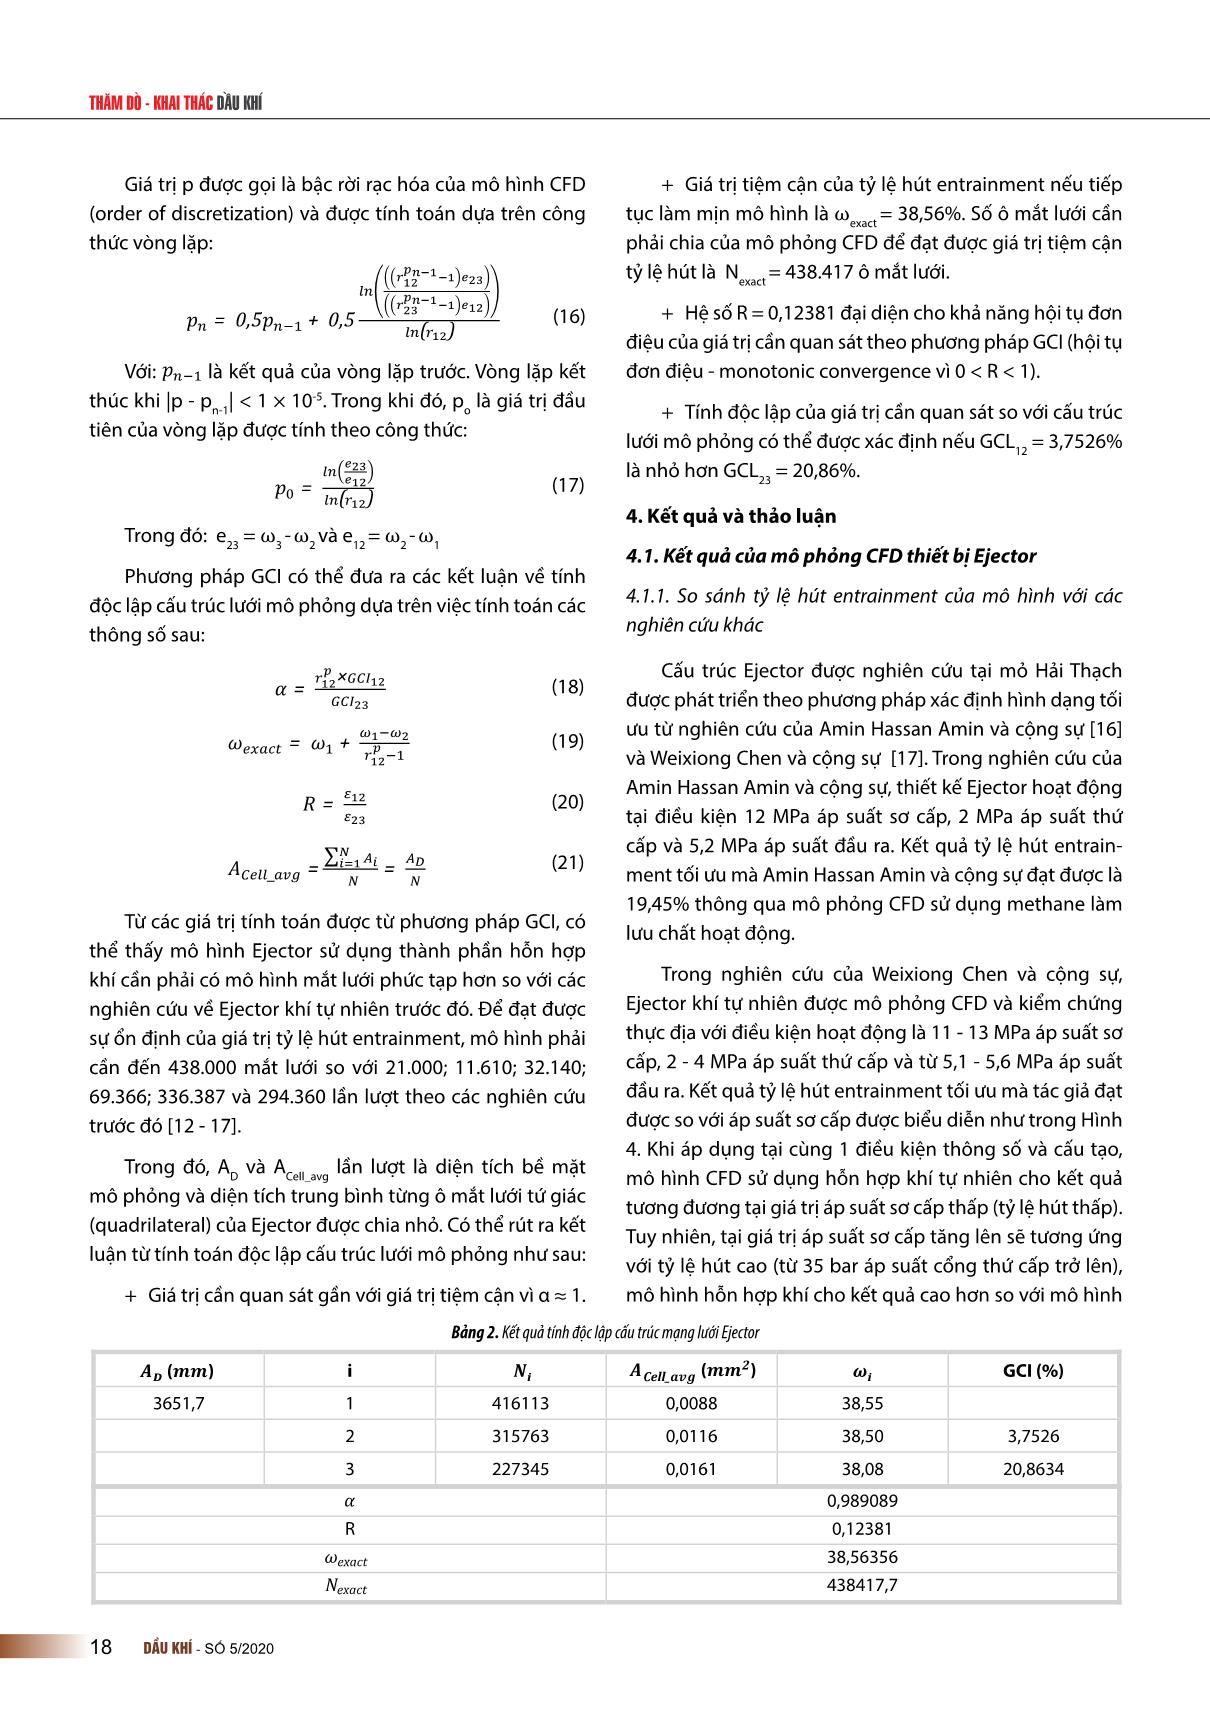 Nghiên cứu xây dựng mô hình mô phỏng động lực học chất lỏng tính toán (CFD) cho thiết bị Ejector sử dụng nâng cao tỷ lệ thu hồi mỏ khí condensate Hải Thạch trang 5